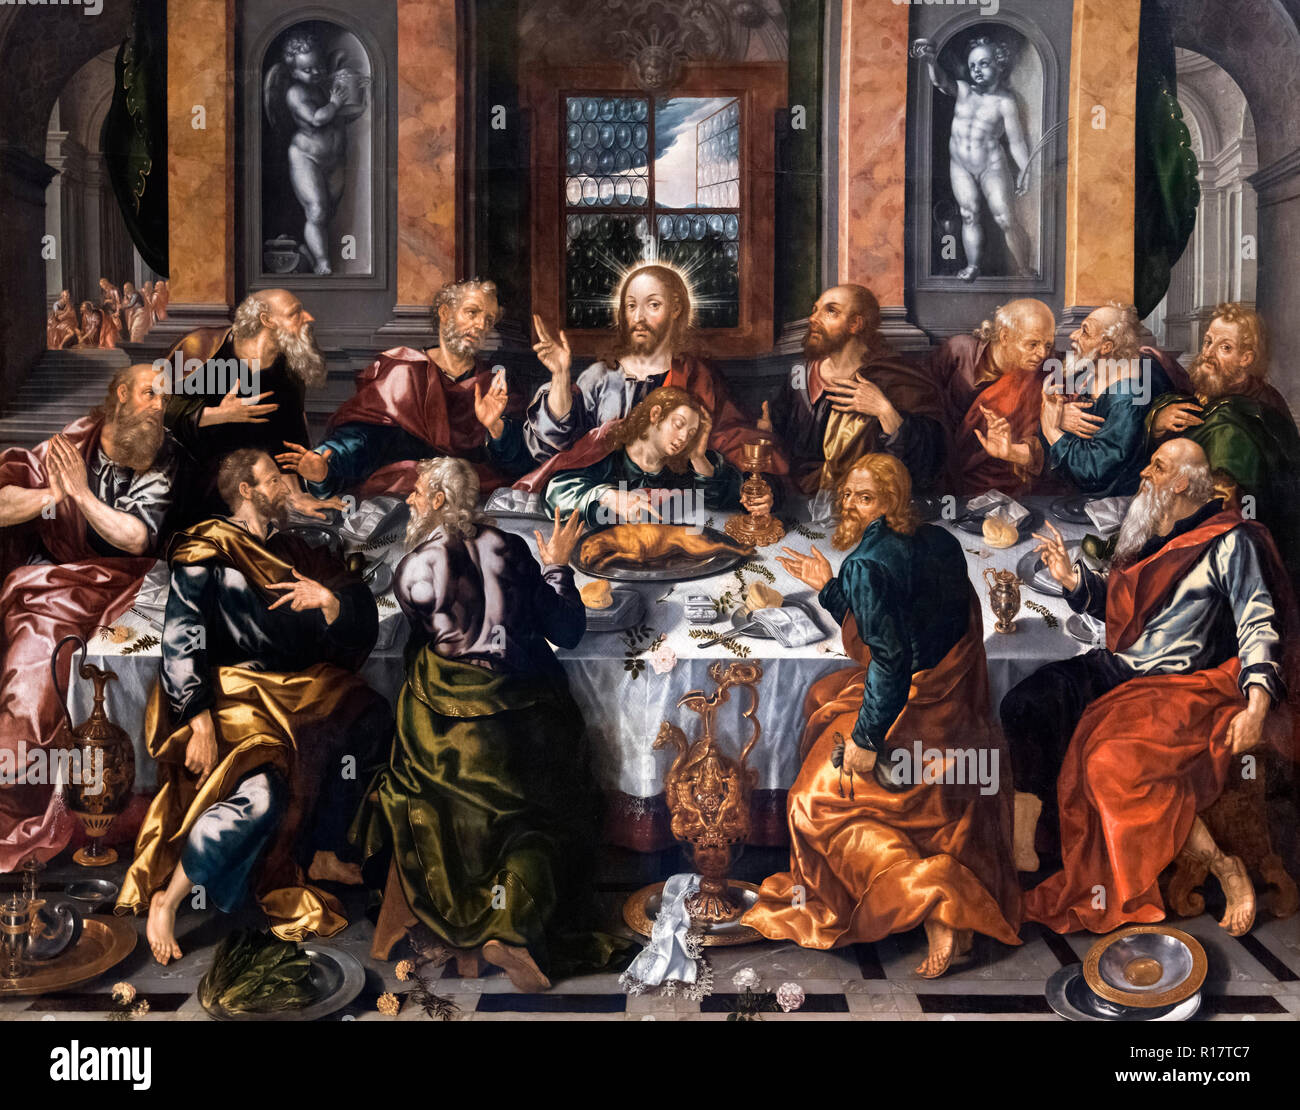 La dernière Cène (La Cena Sagrada) par Alonso Vázquez (1565 -1608), huile sur toile, c. 1588 Banque D'Images